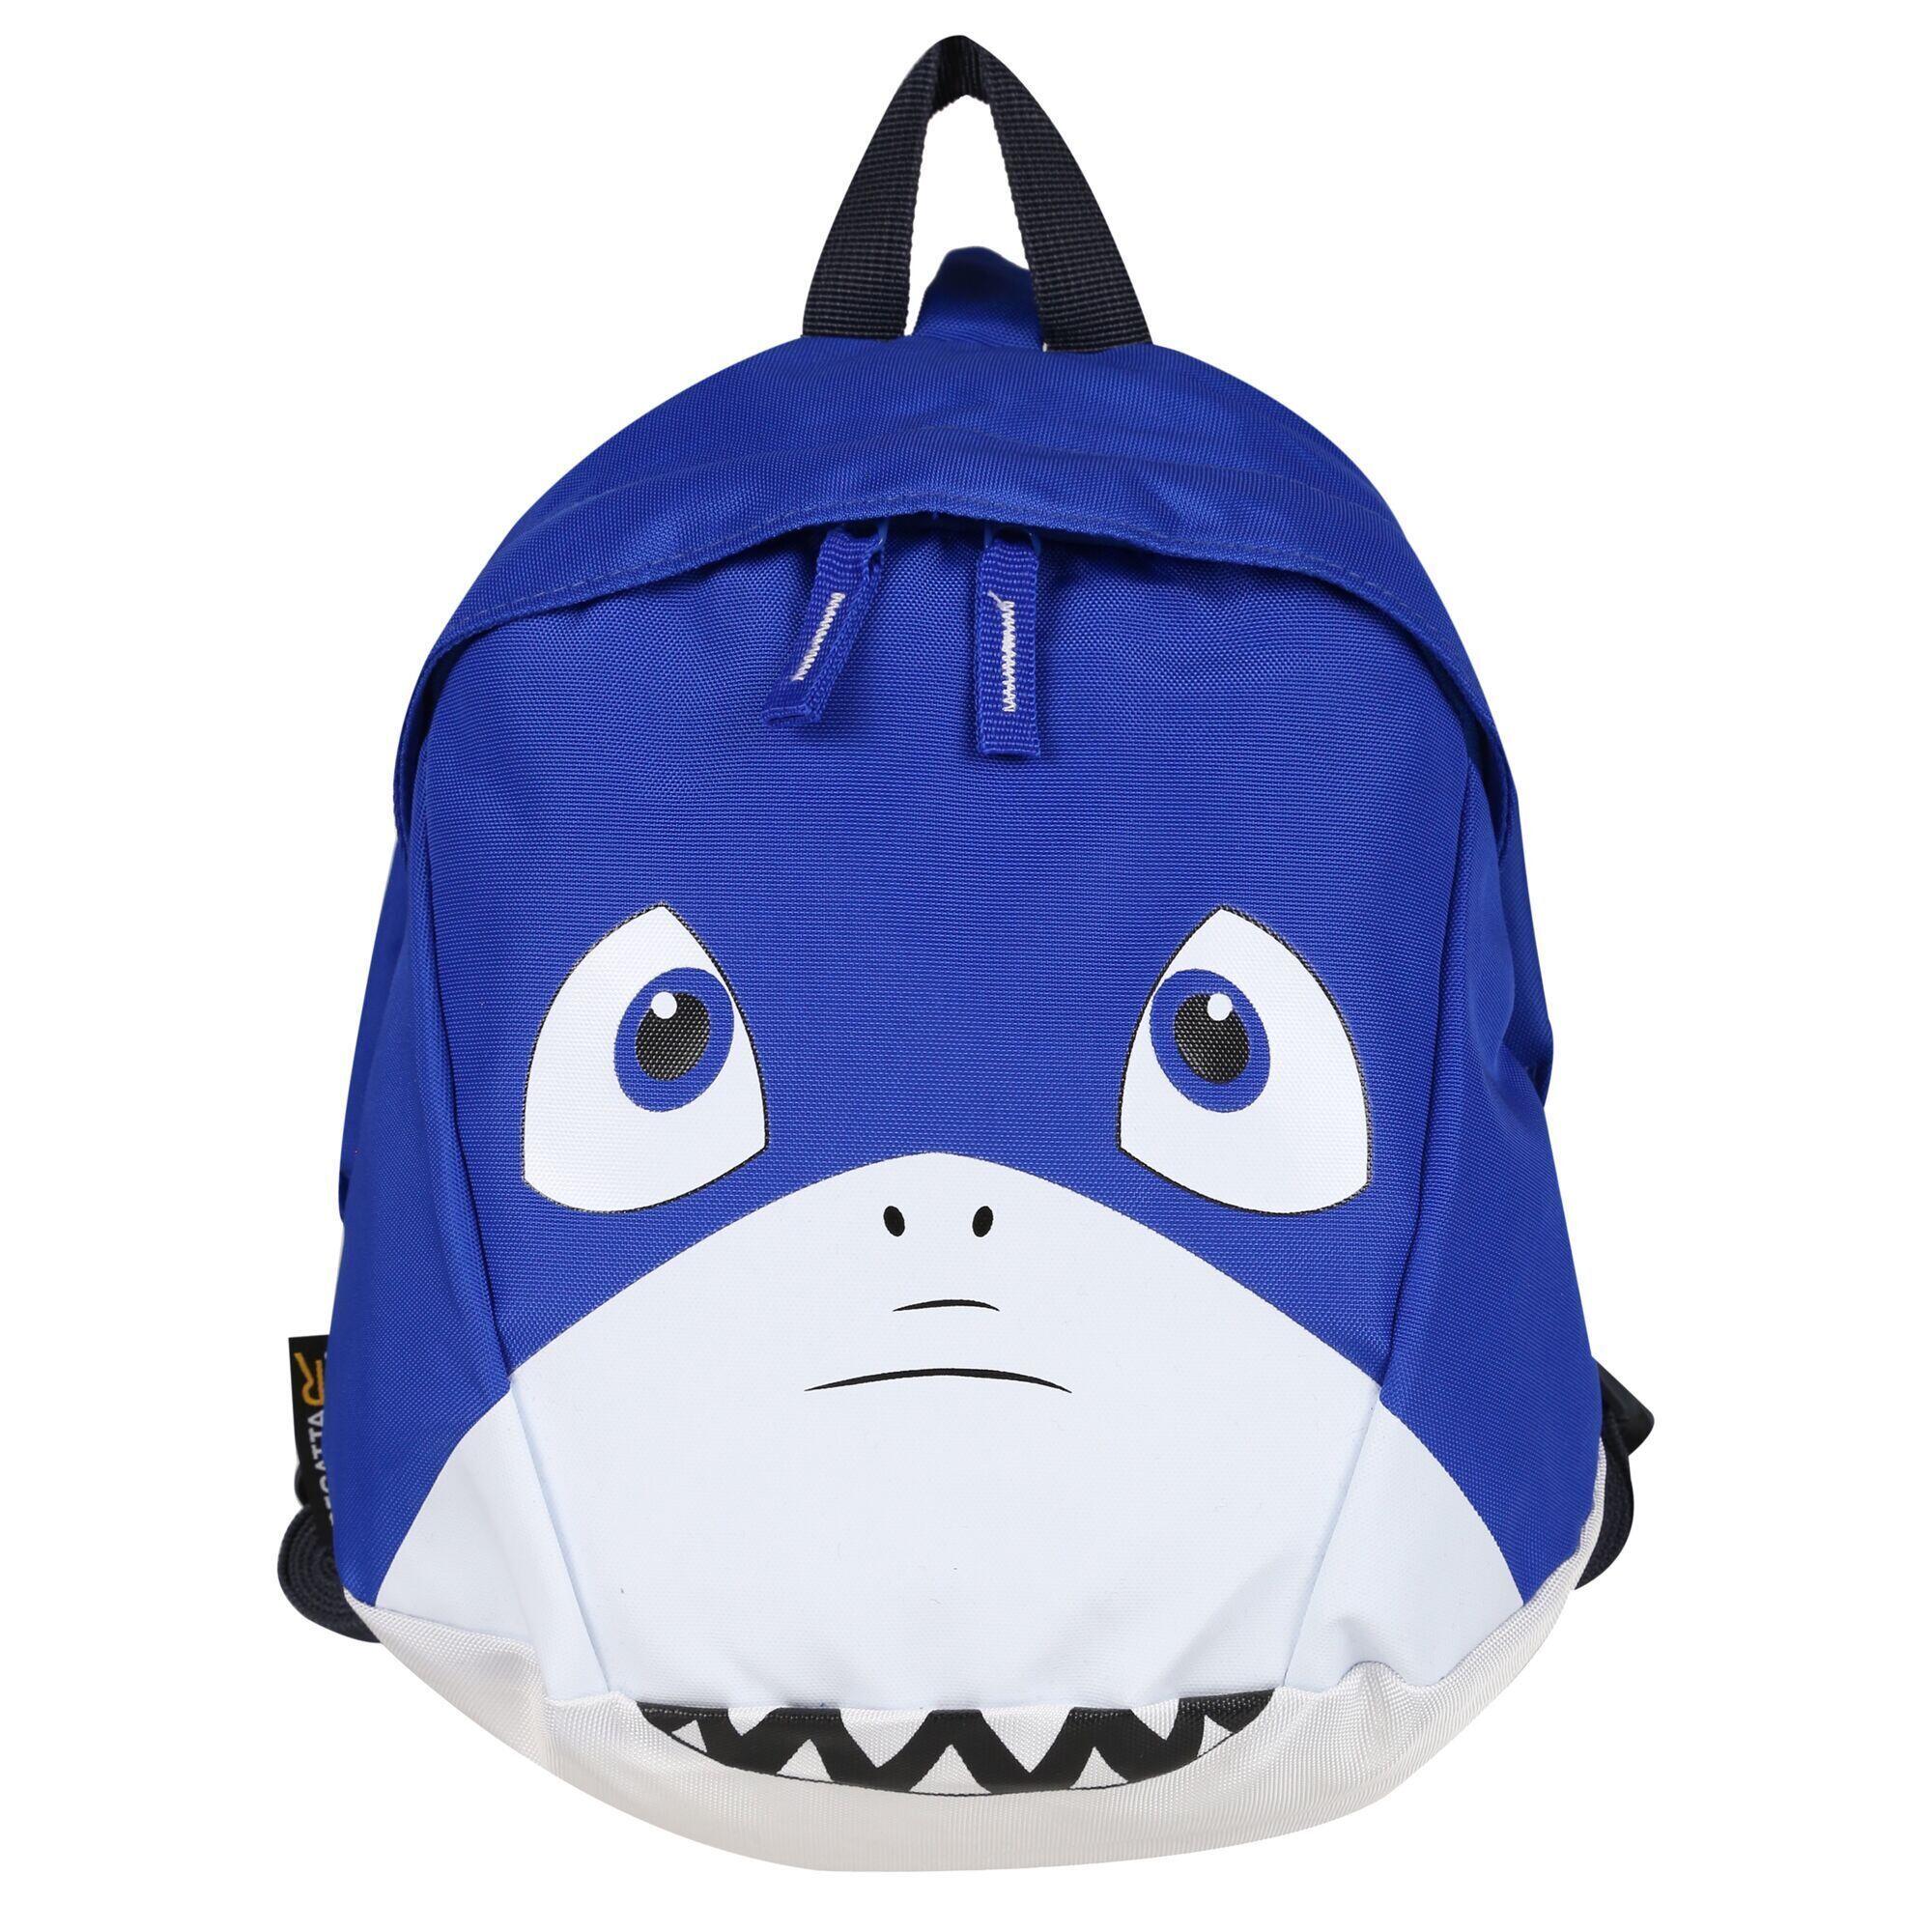 REGATTA Childrens/Kids Roary Animal Shark Backpack (Blue)